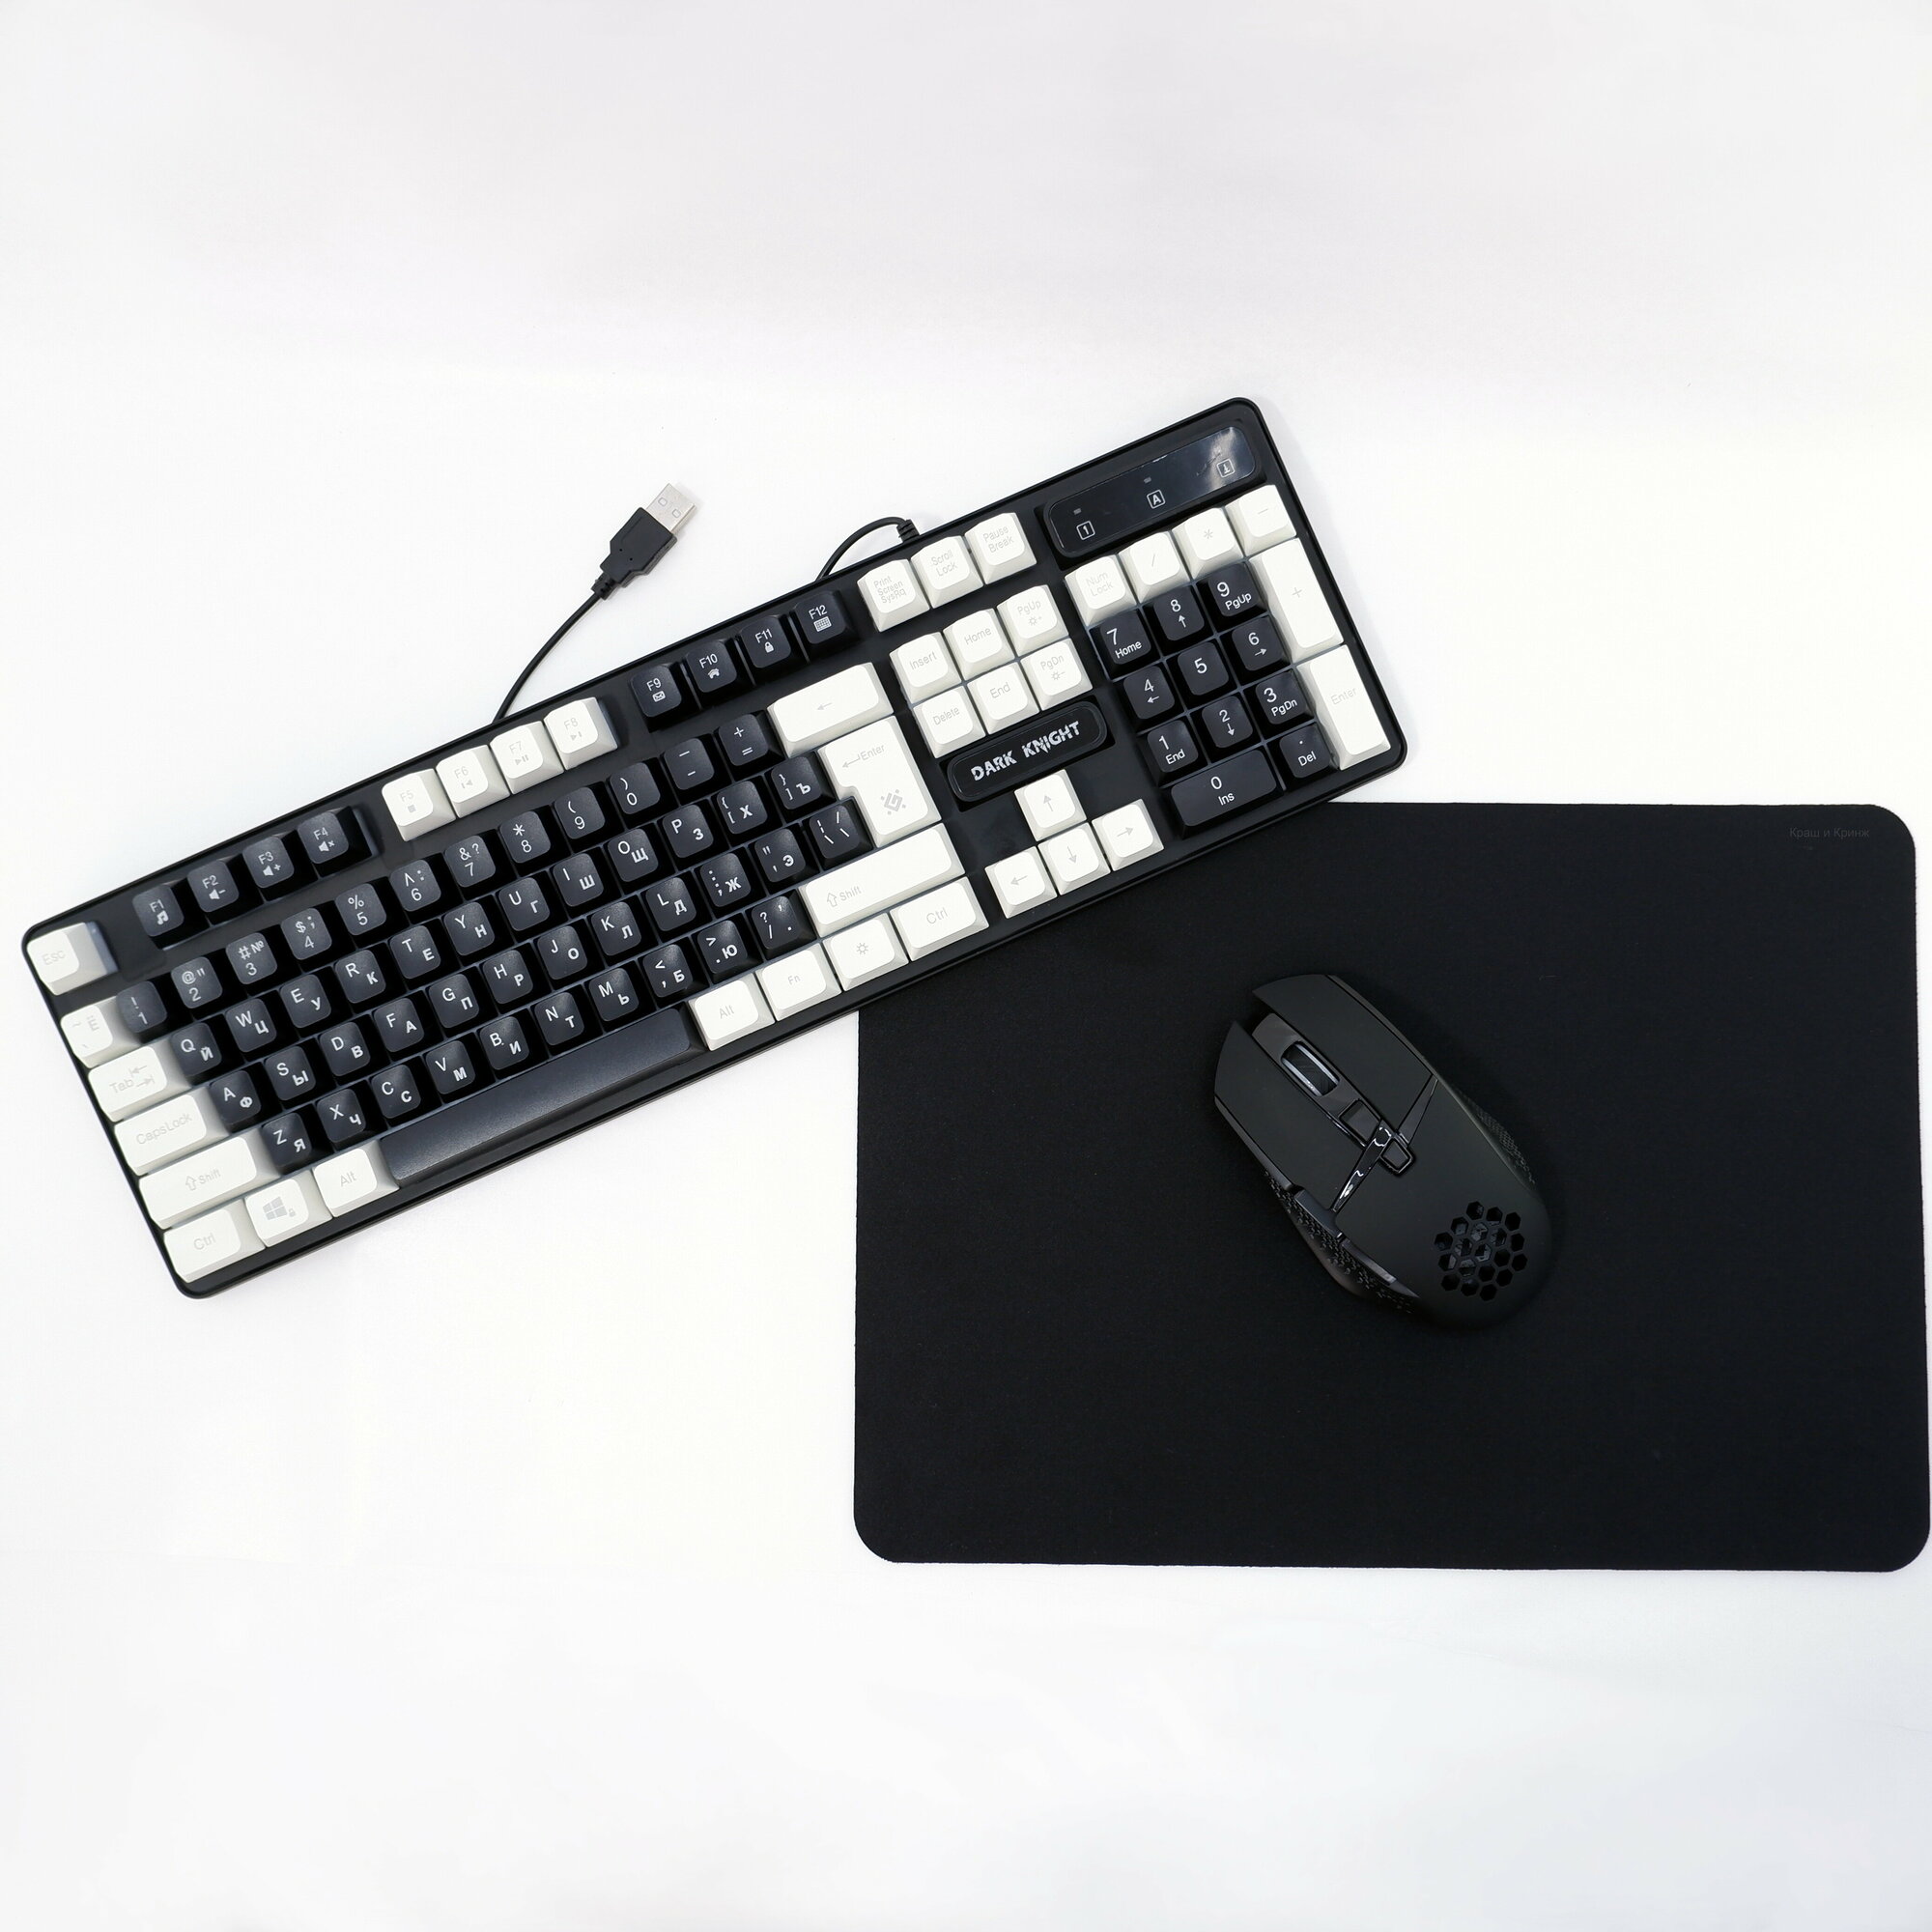 Комплект для ПК Беспроводная мышь + USB клавиатура с подсветкой + коврик набор для чистки в ! Готовое решения для рабочего места.